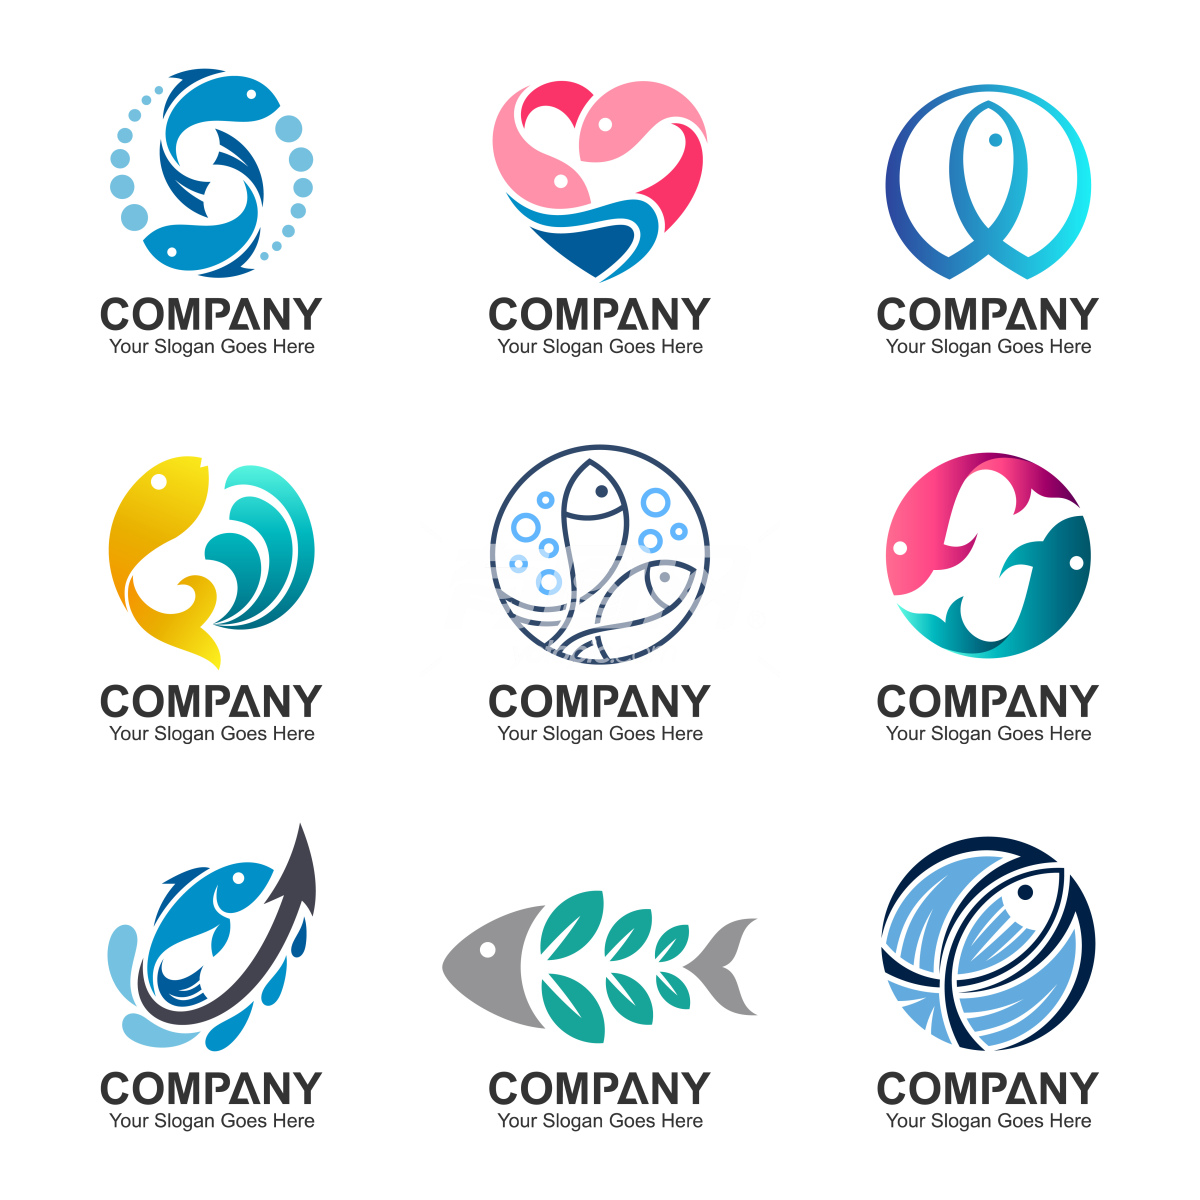 鱼造型设计的公司logo